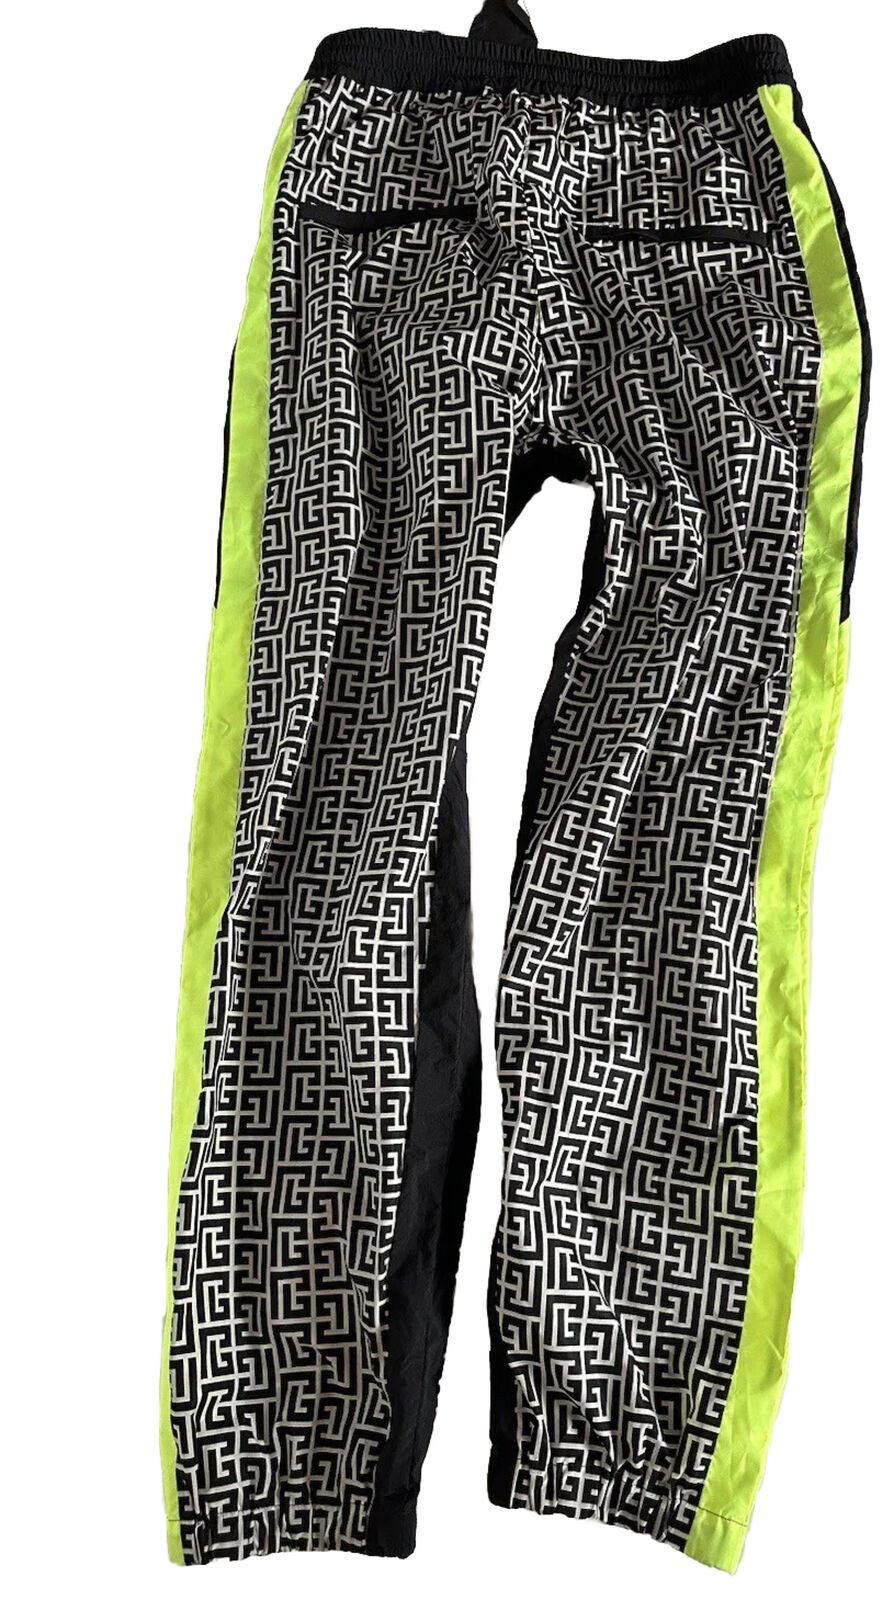 NWT 1695 долларов США Balmain Monogram Нейлоновые спортивные брюки 34 США (50 евро), сделано в Италии 